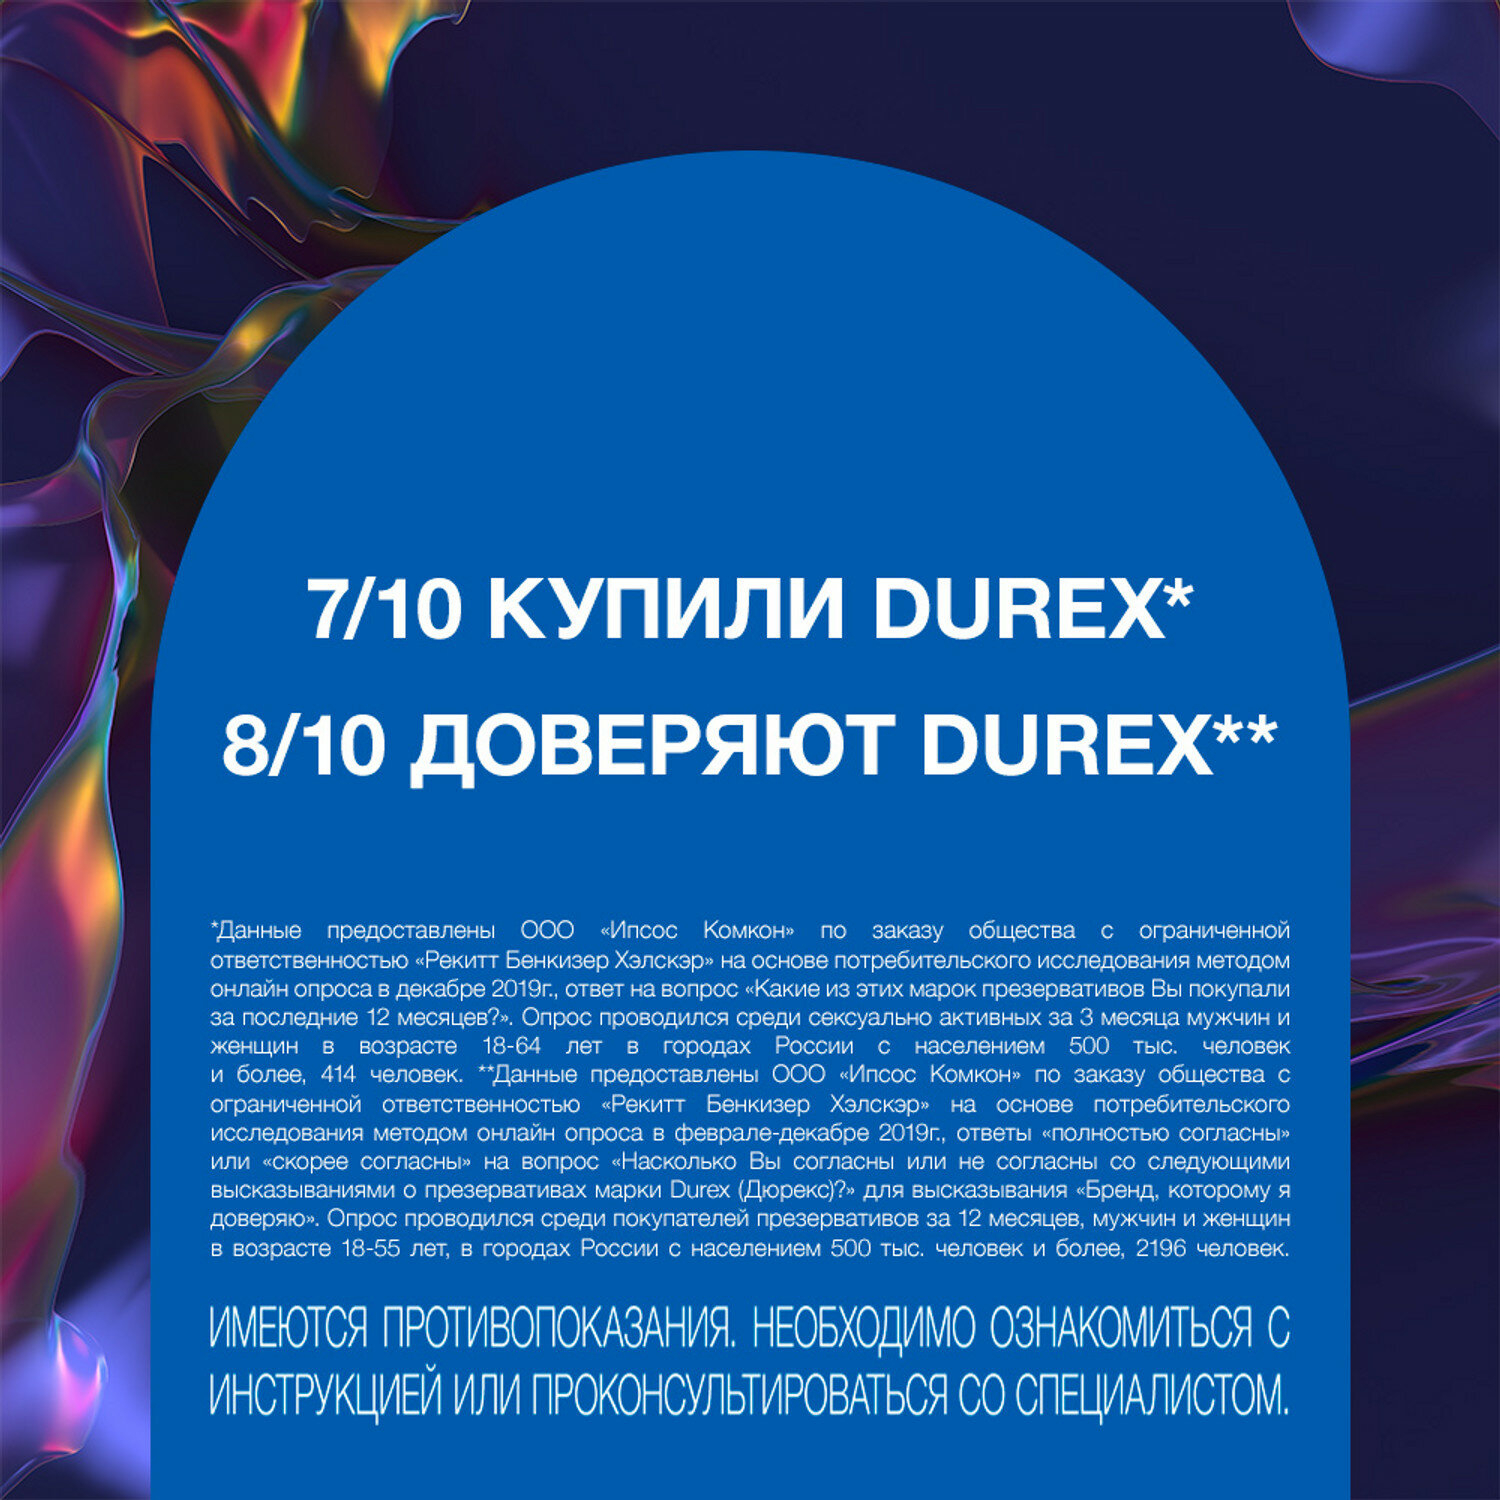 Презервативы Durex (Дюрекс) с анестетиком Infinity гладкие, вариант 2, 3 шт. Рекитт Бенкизер Хелскэар (ЮК) Лтд - фото №6